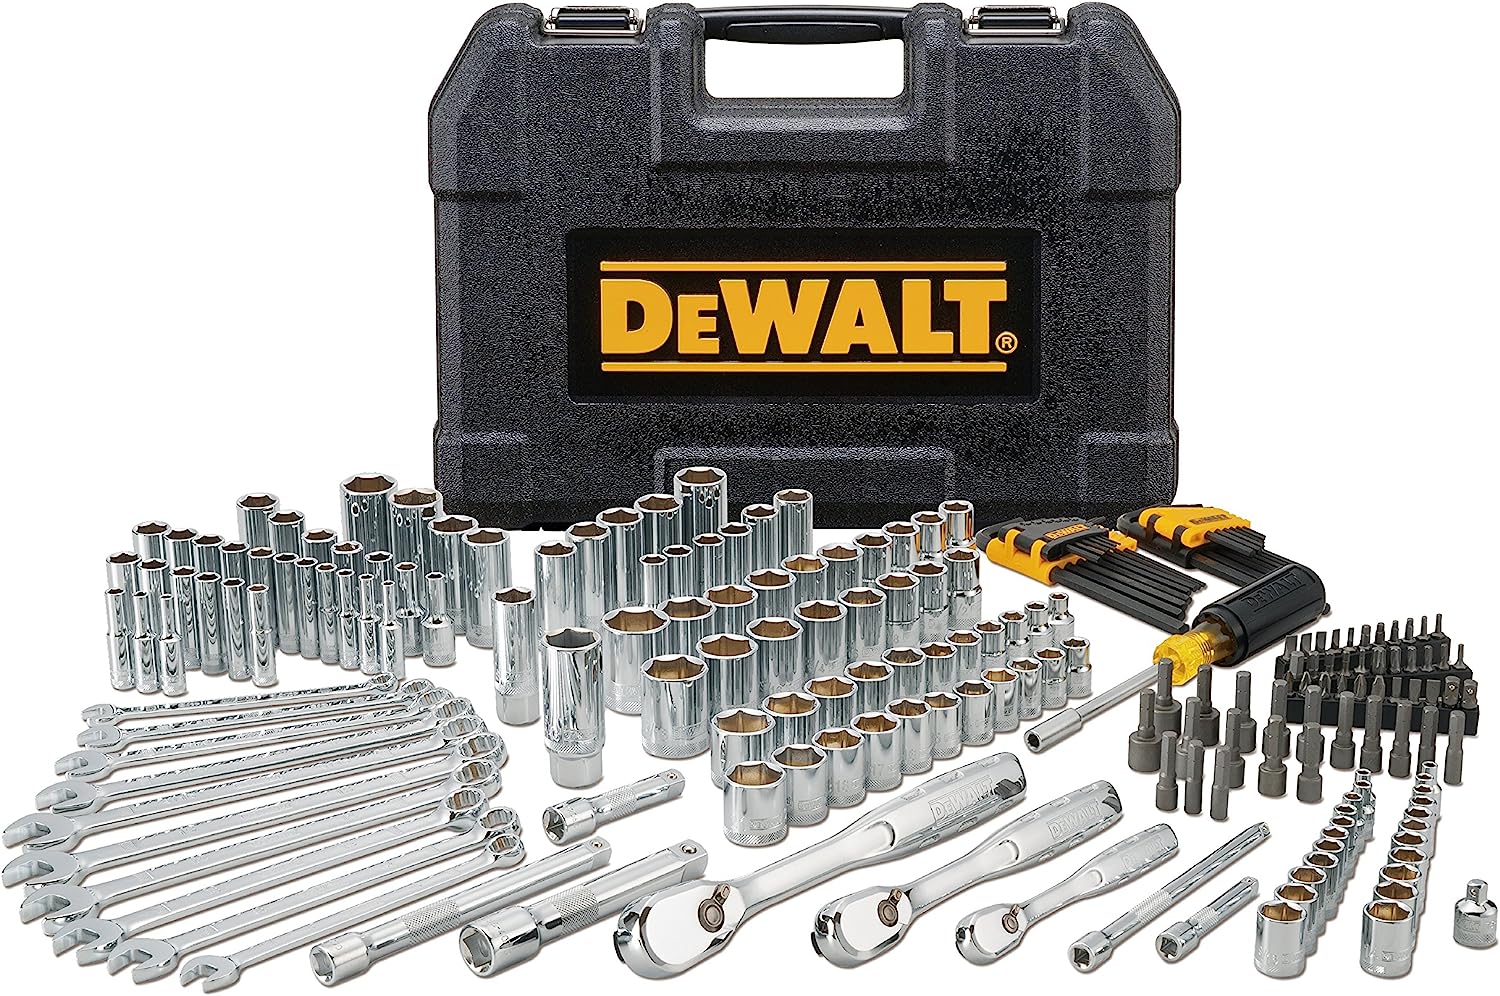 DEWALT Mechanics Tool Set, 1/4